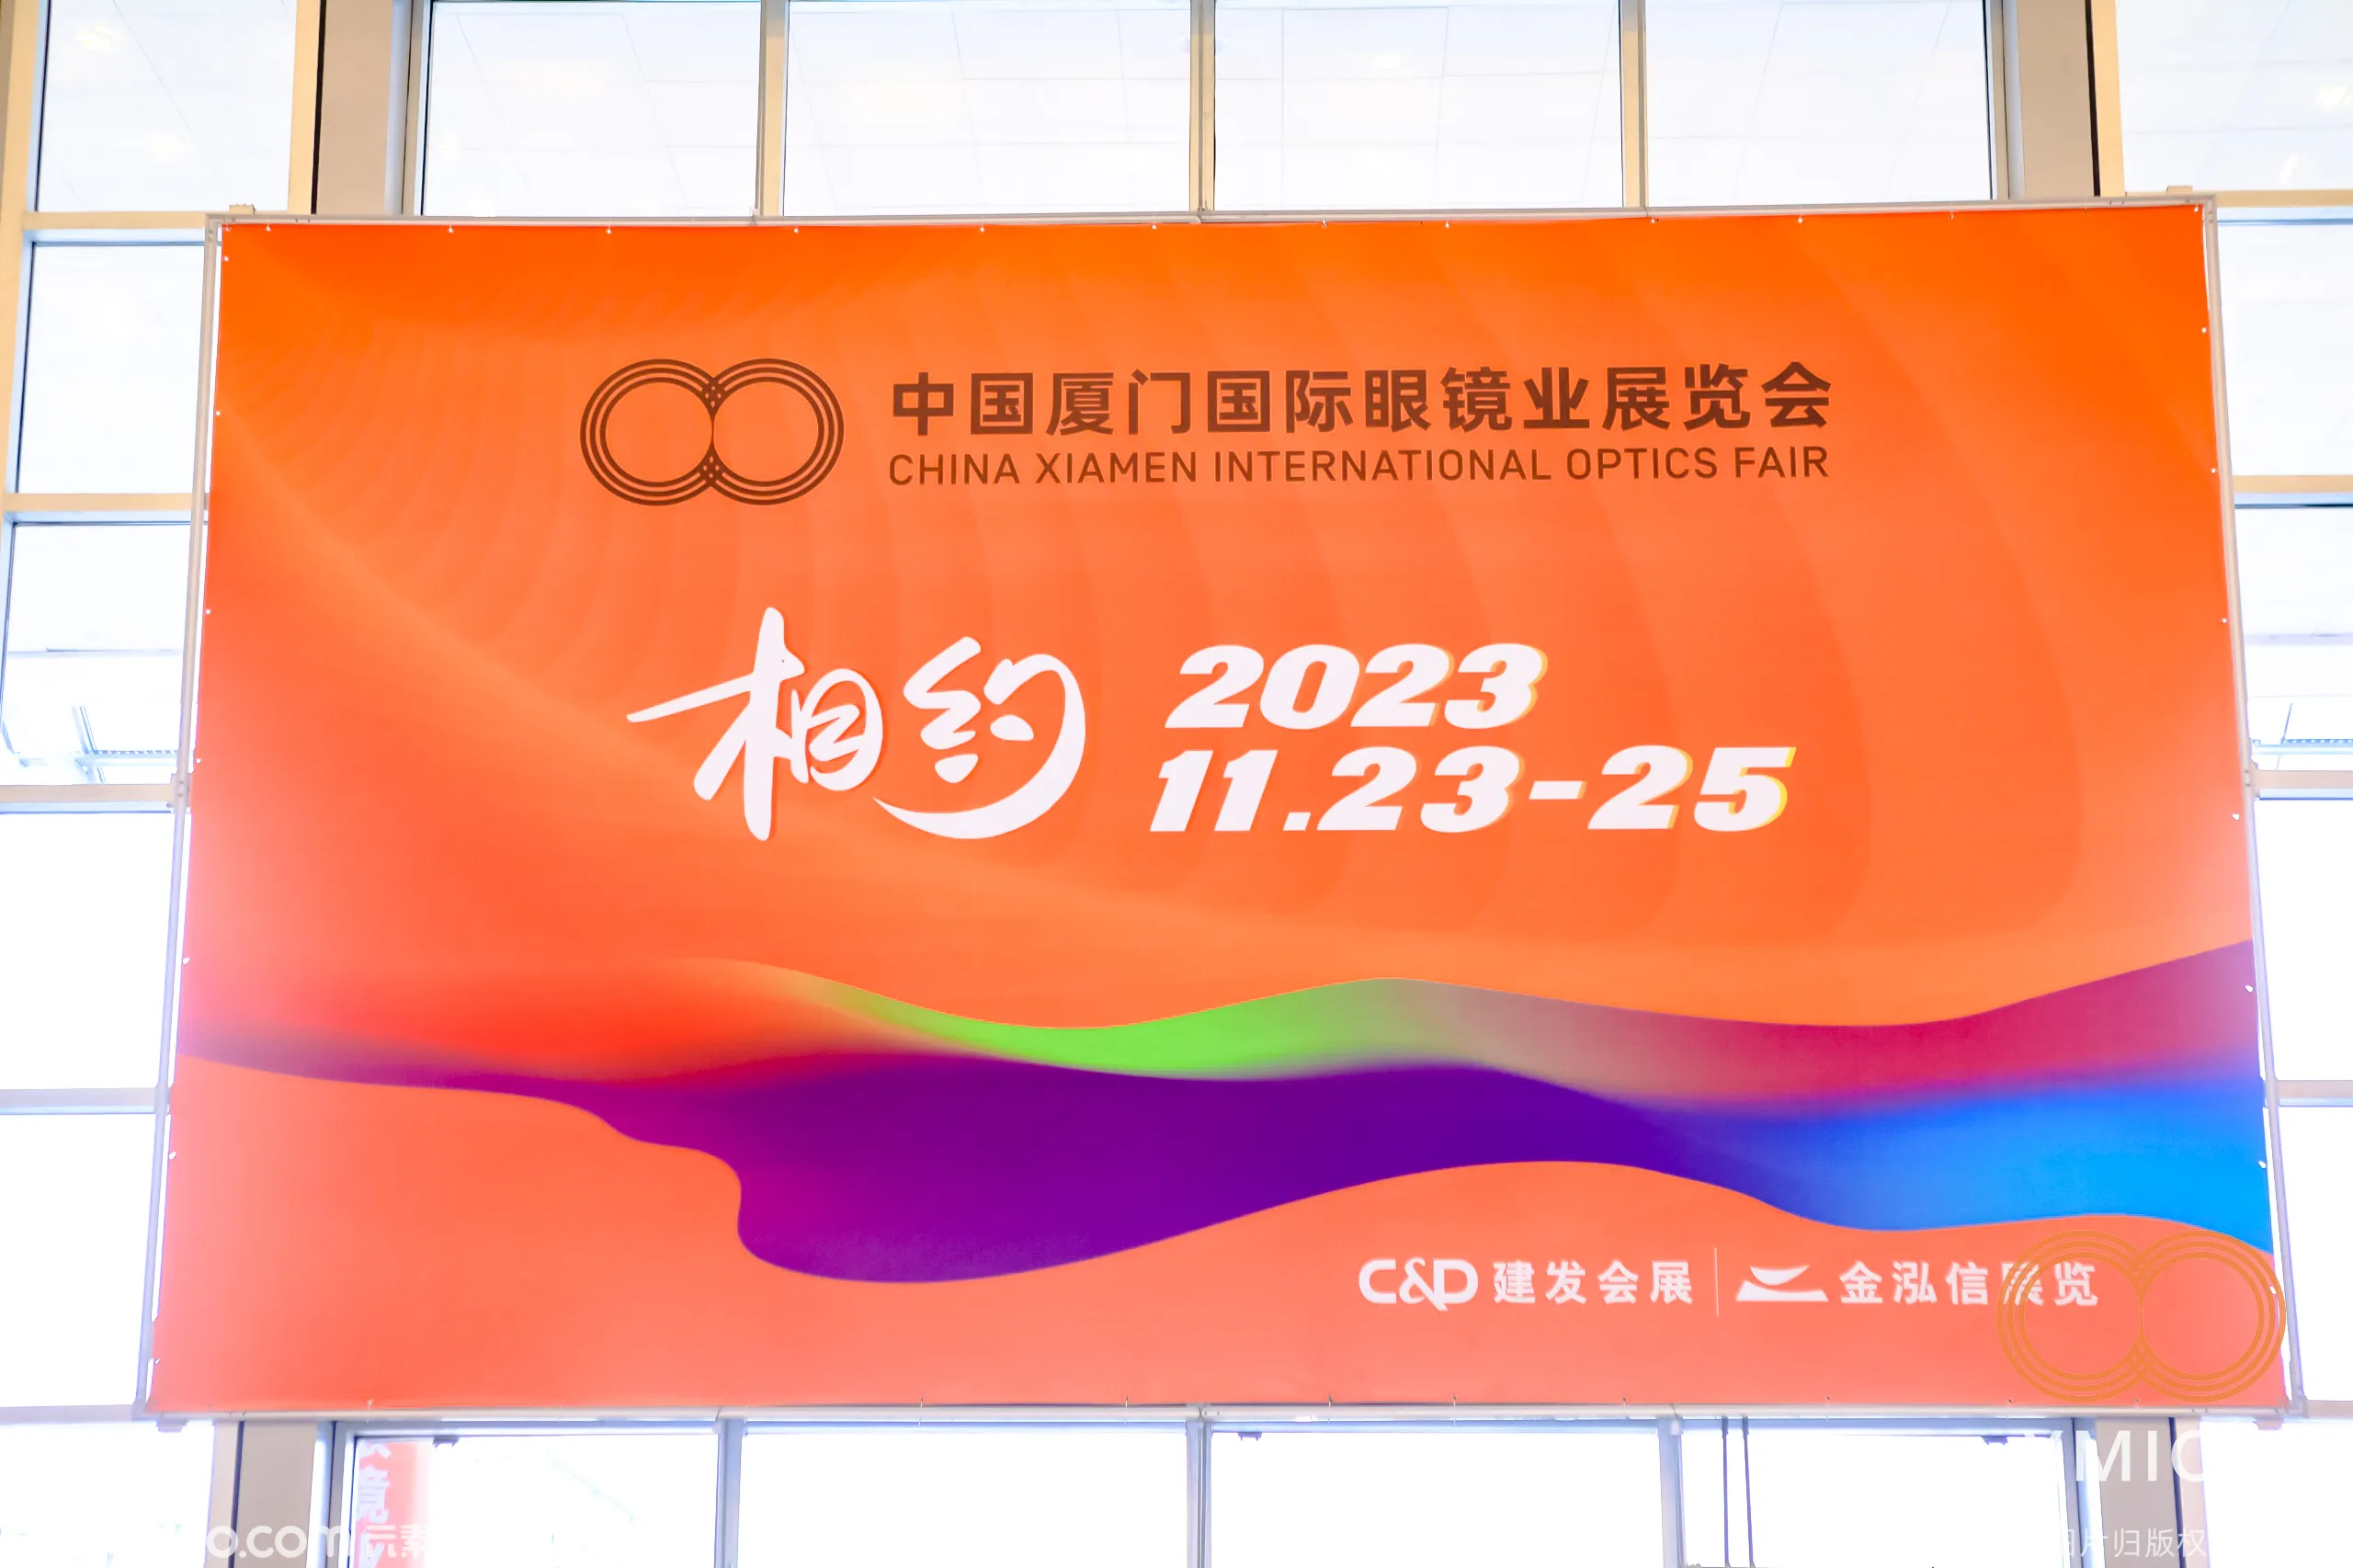 2022厦门国际眼镜业展览会